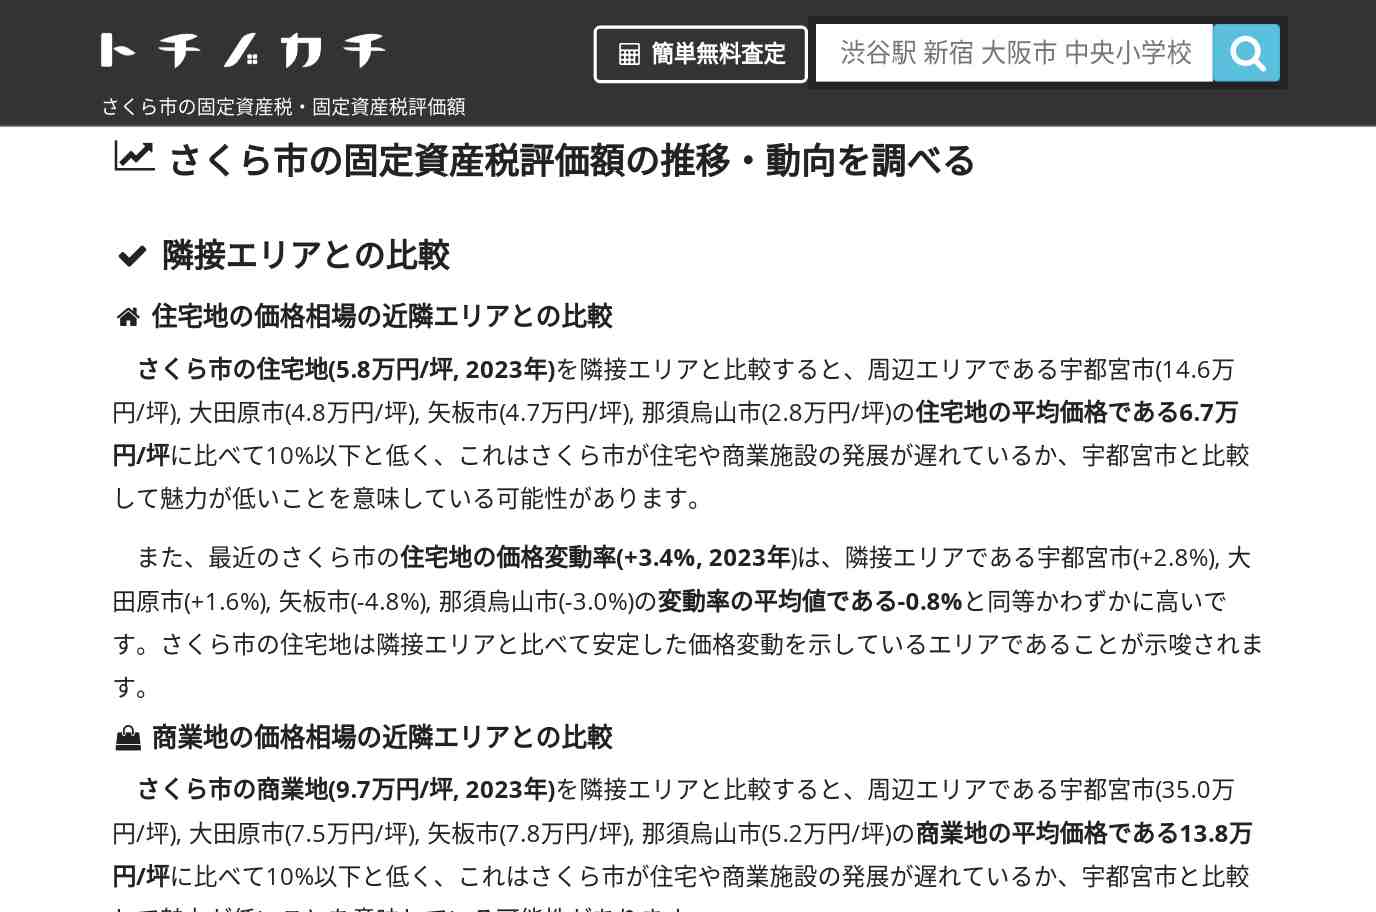 氏家中学校(栃木県 さくら市)周辺の固定資産税・固定資産税評価額 | トチノカチ